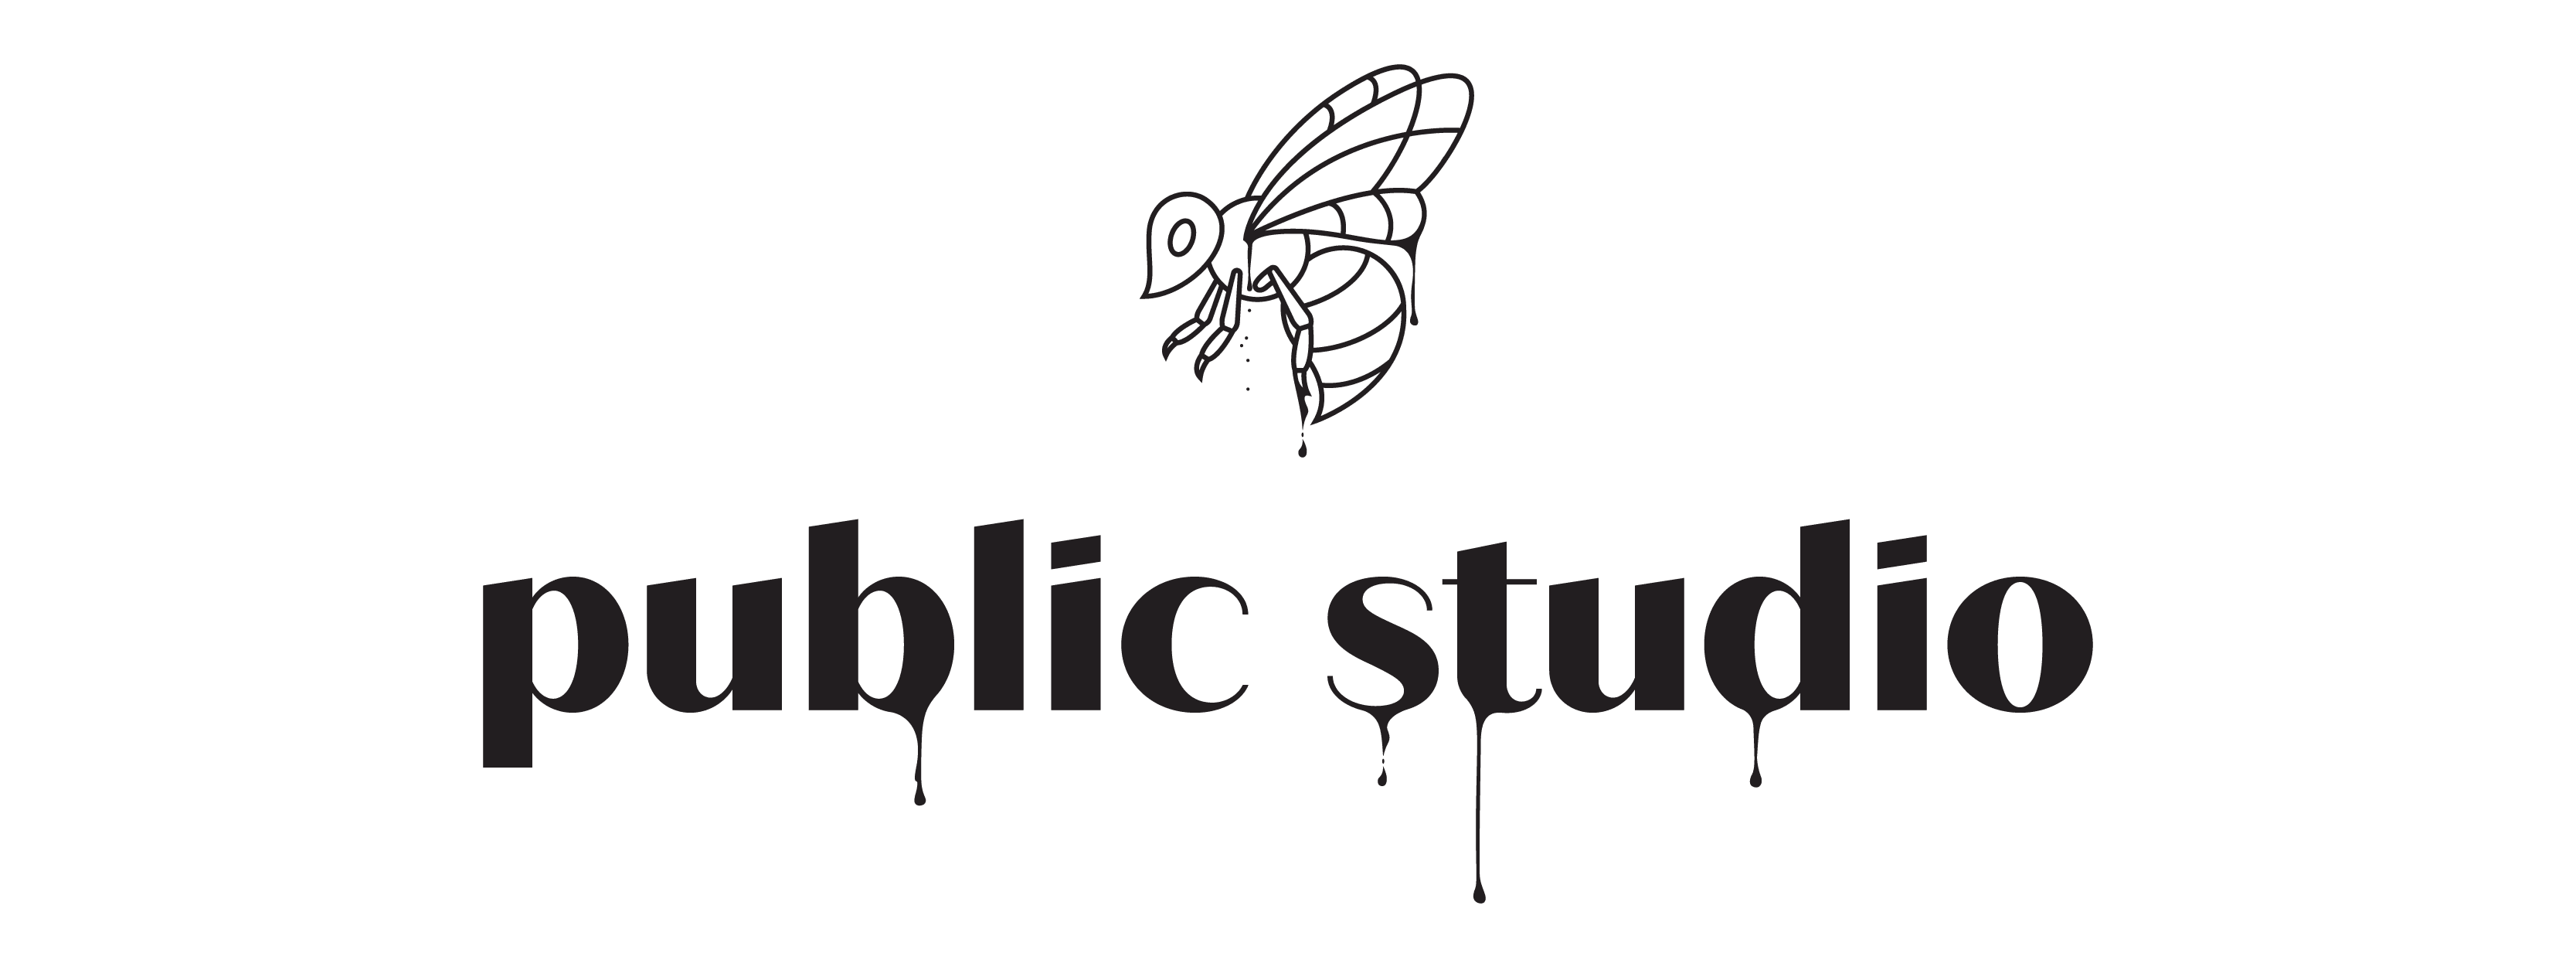 Public Studio logo